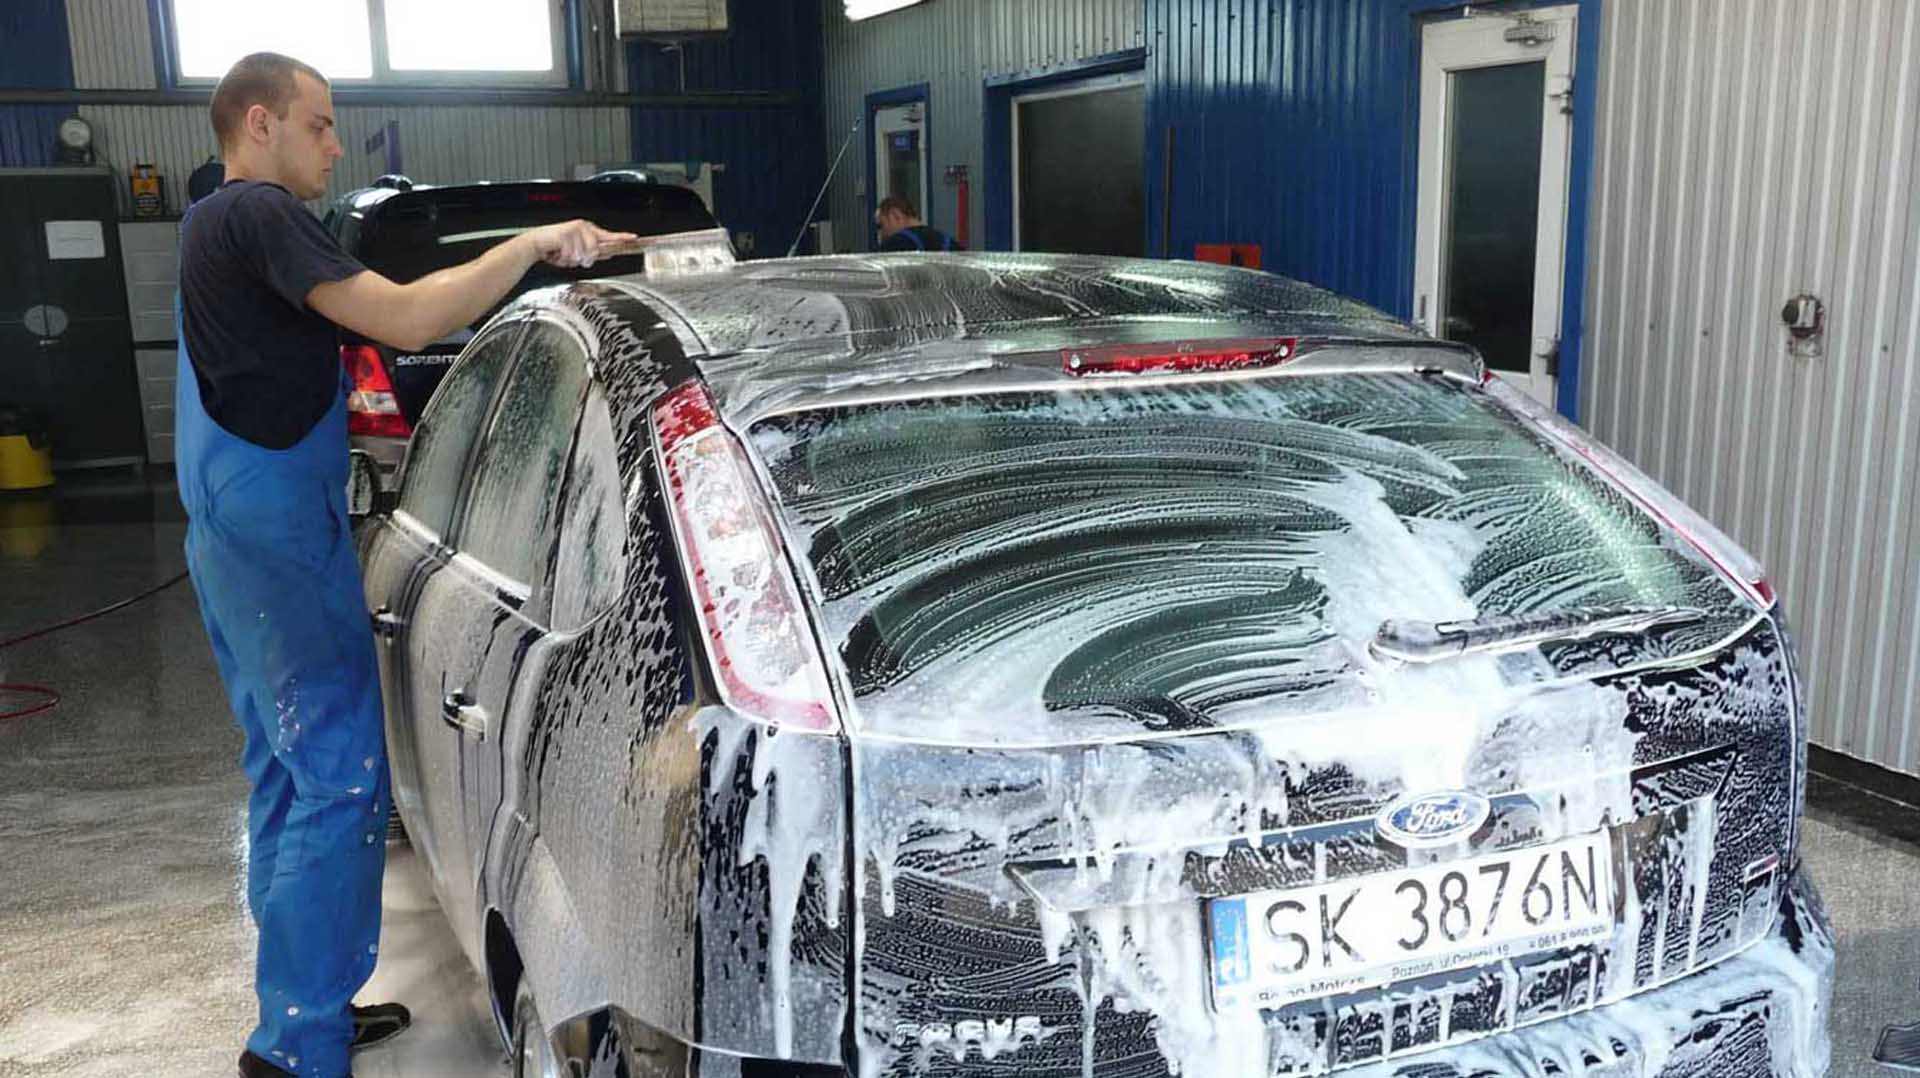 Brosserie pour lavage auto, l’expertise au service des pros du lavage auto